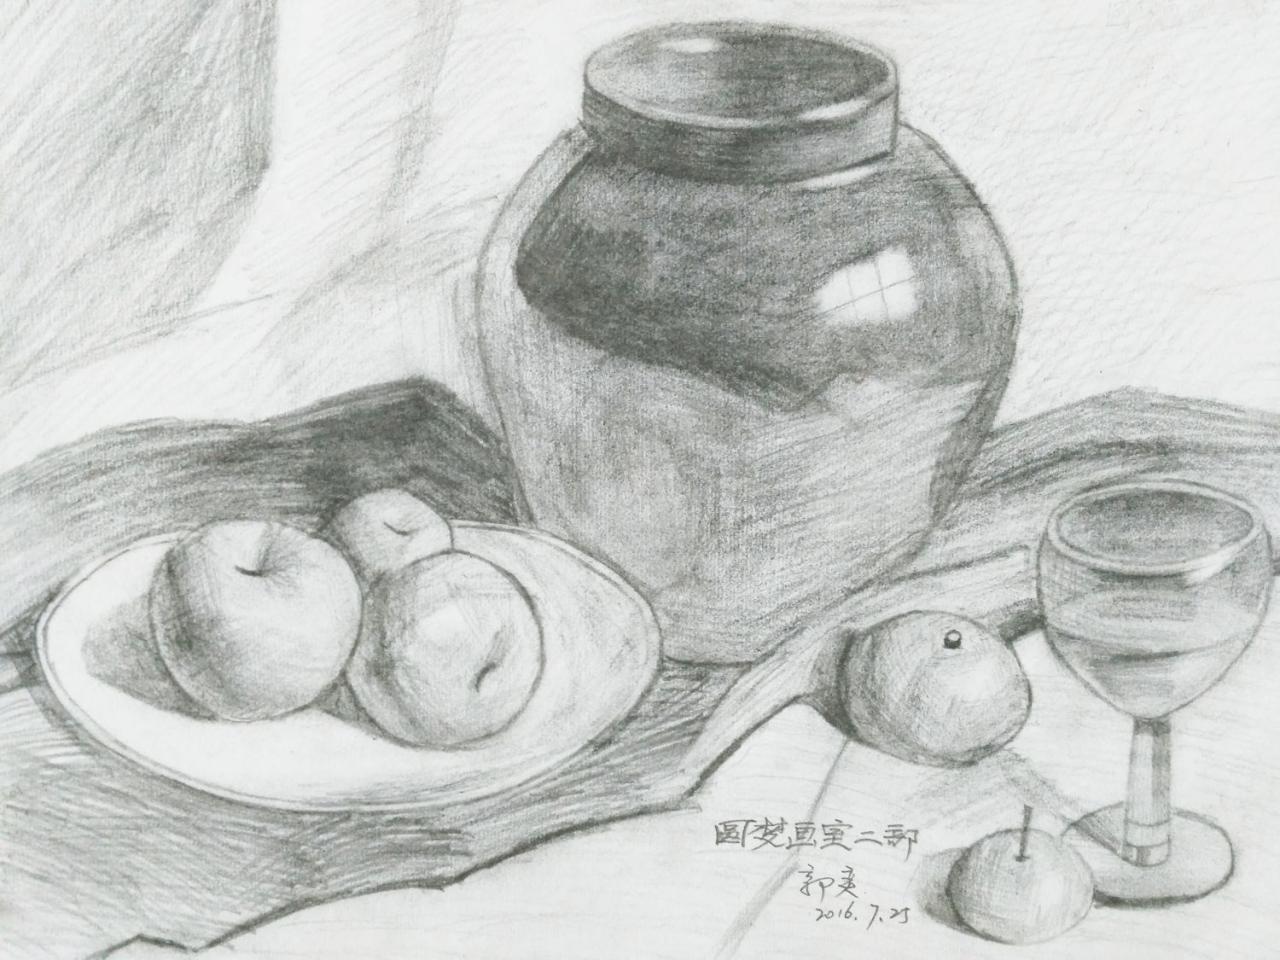 陶罐、盘子、玻璃杯、苹果、盘子 静物素描 郭奕画